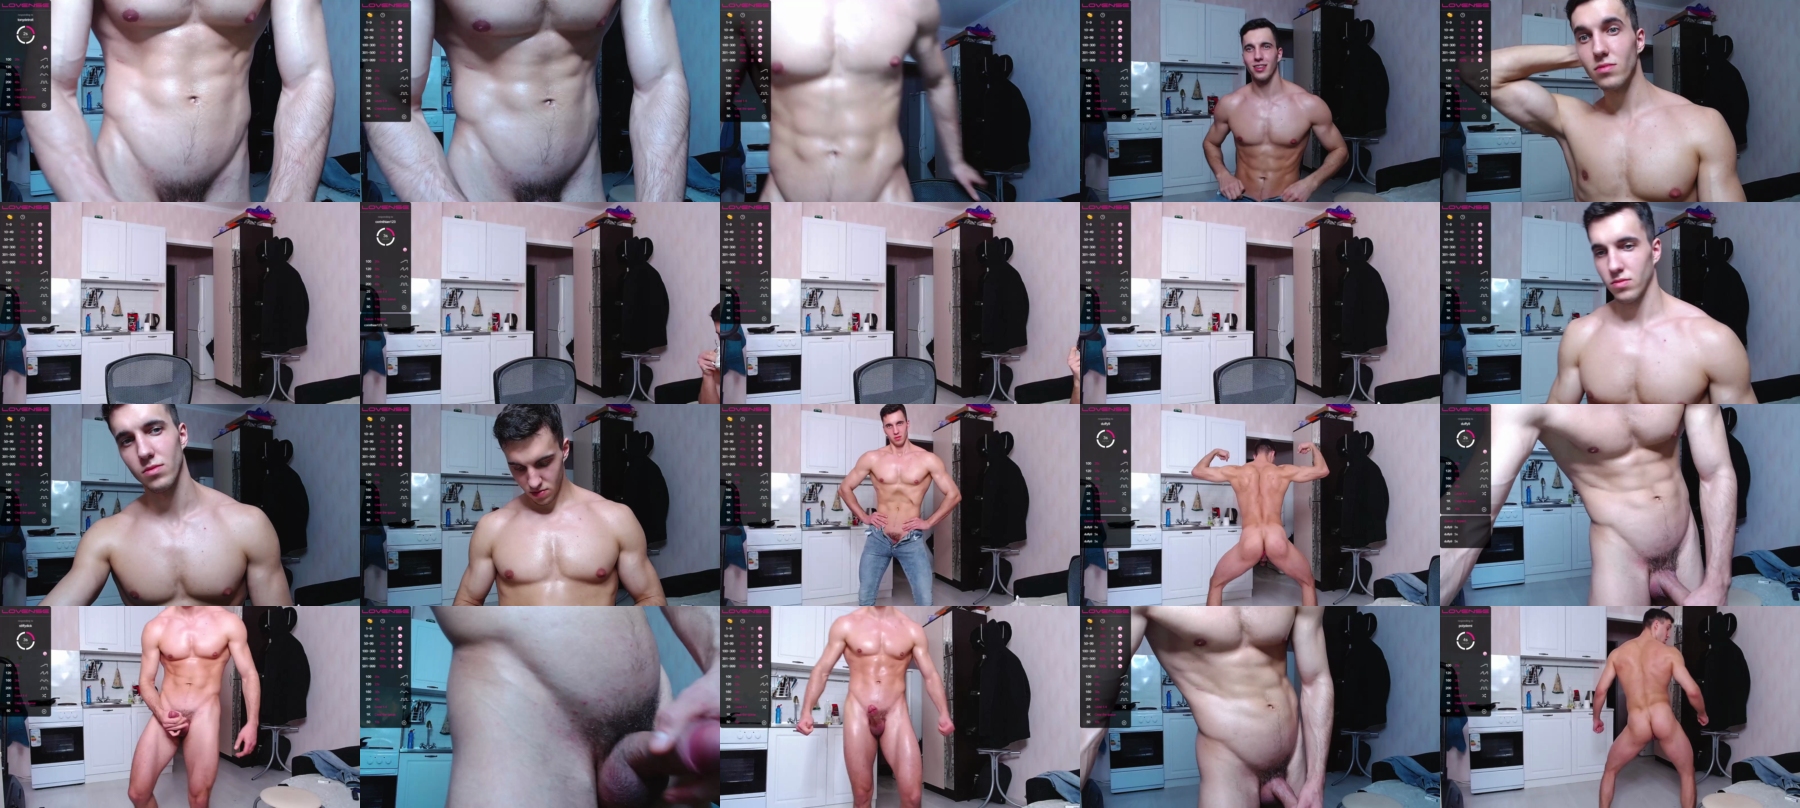 Theodore_Hot  03-12-2021 Male Webcam